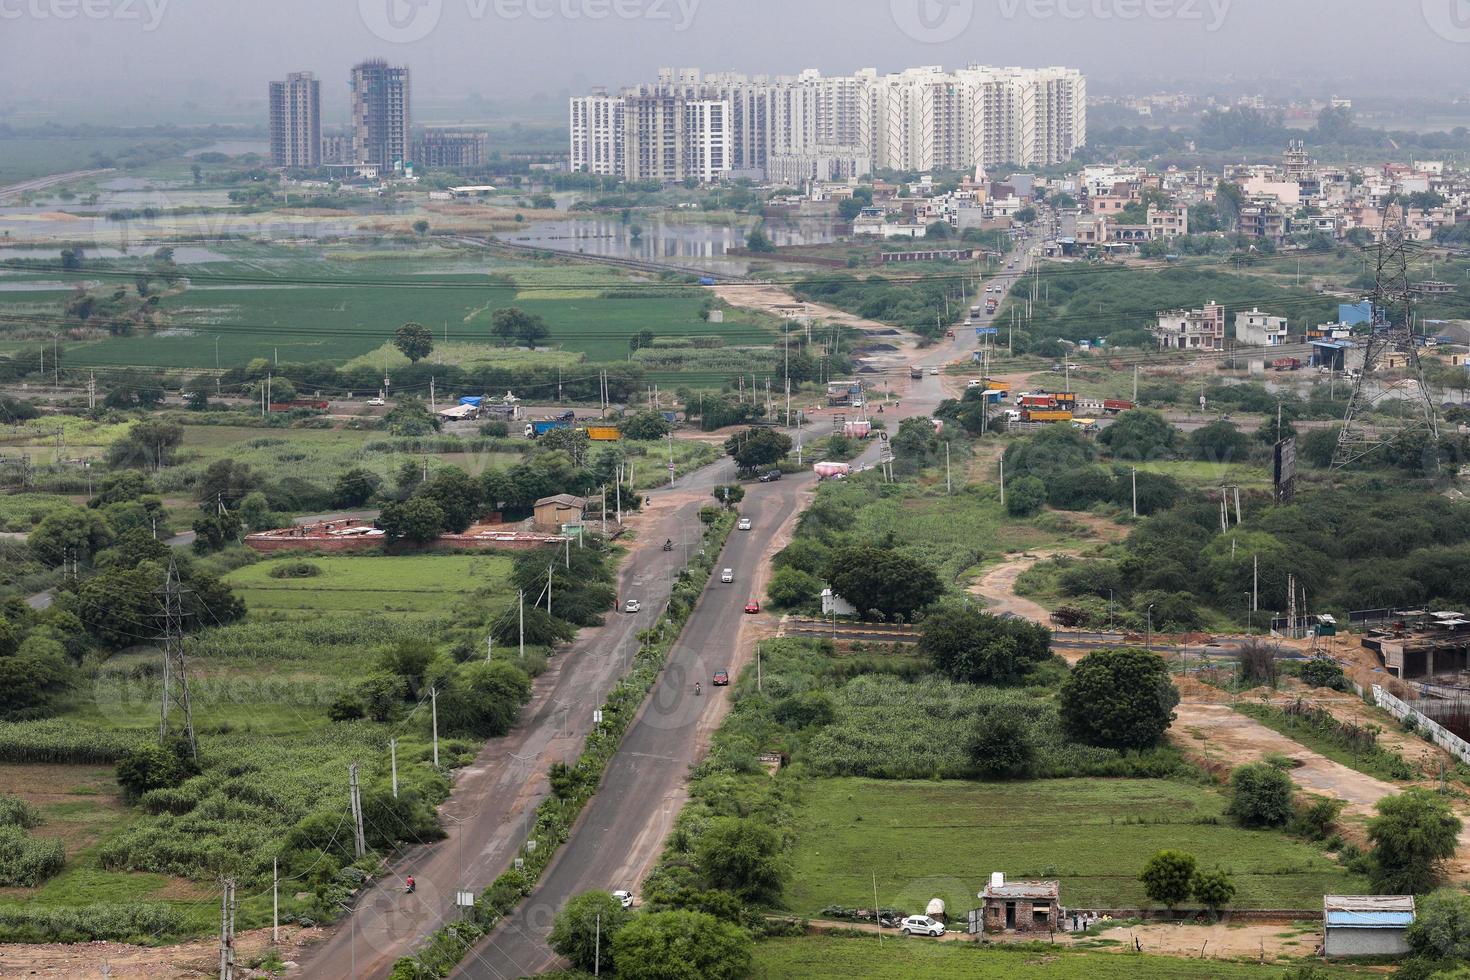 vue aérienne du paysage d'une ville en développement, périphérie de delhi et de gurugram. vue aérienne des champs et des tours. photo